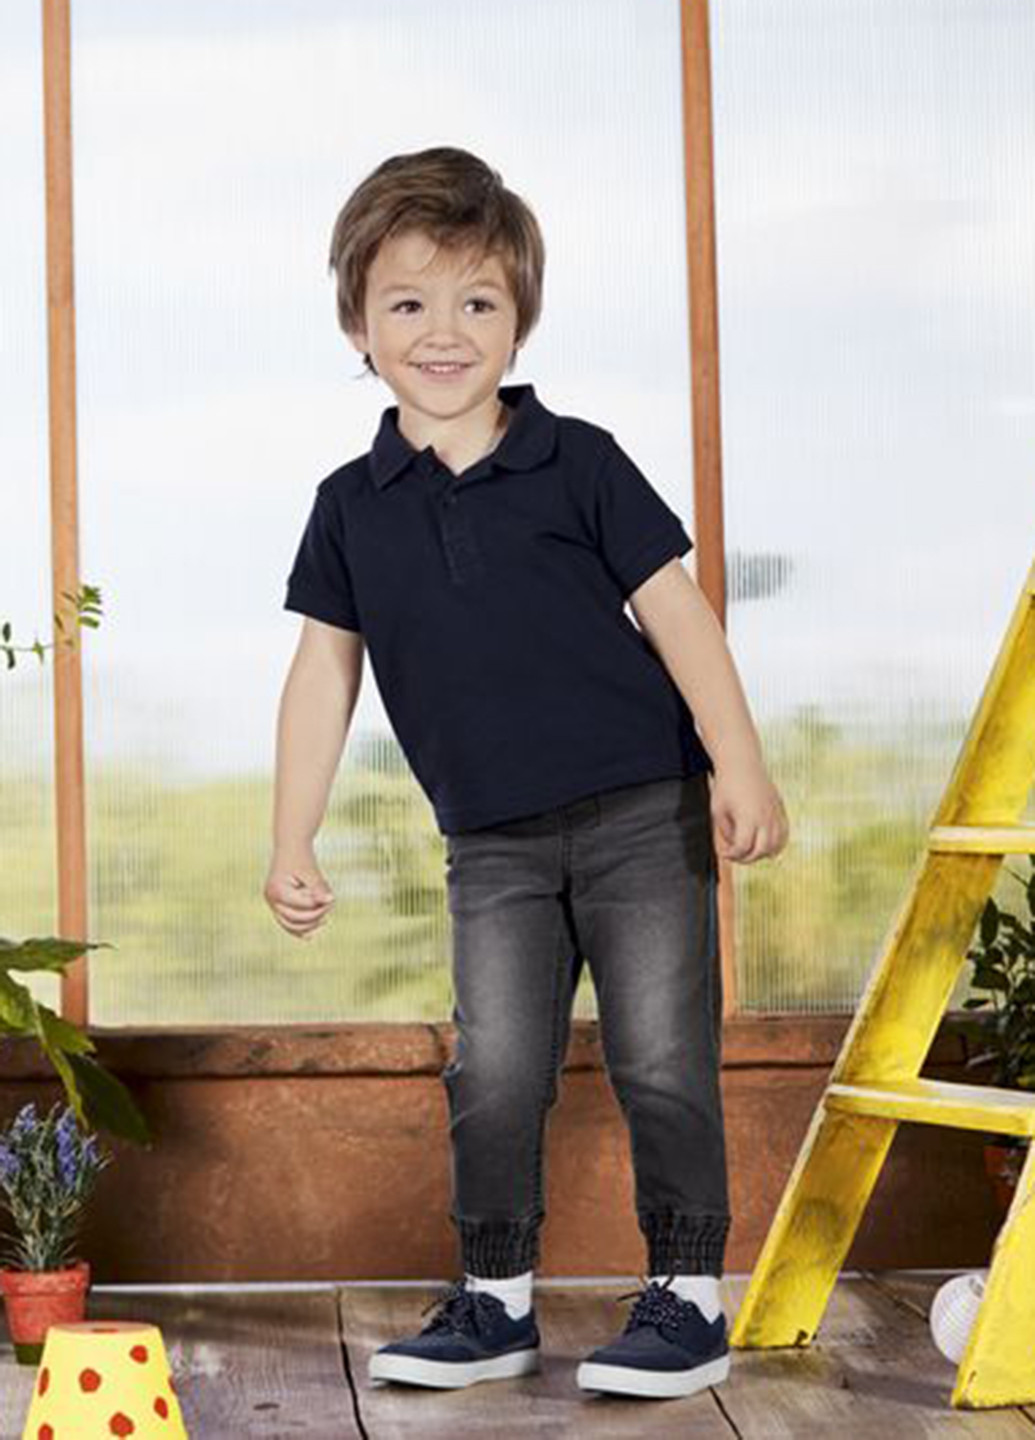 Цветная детская футболка-поло (2 шт.) для мальчика Lupilu